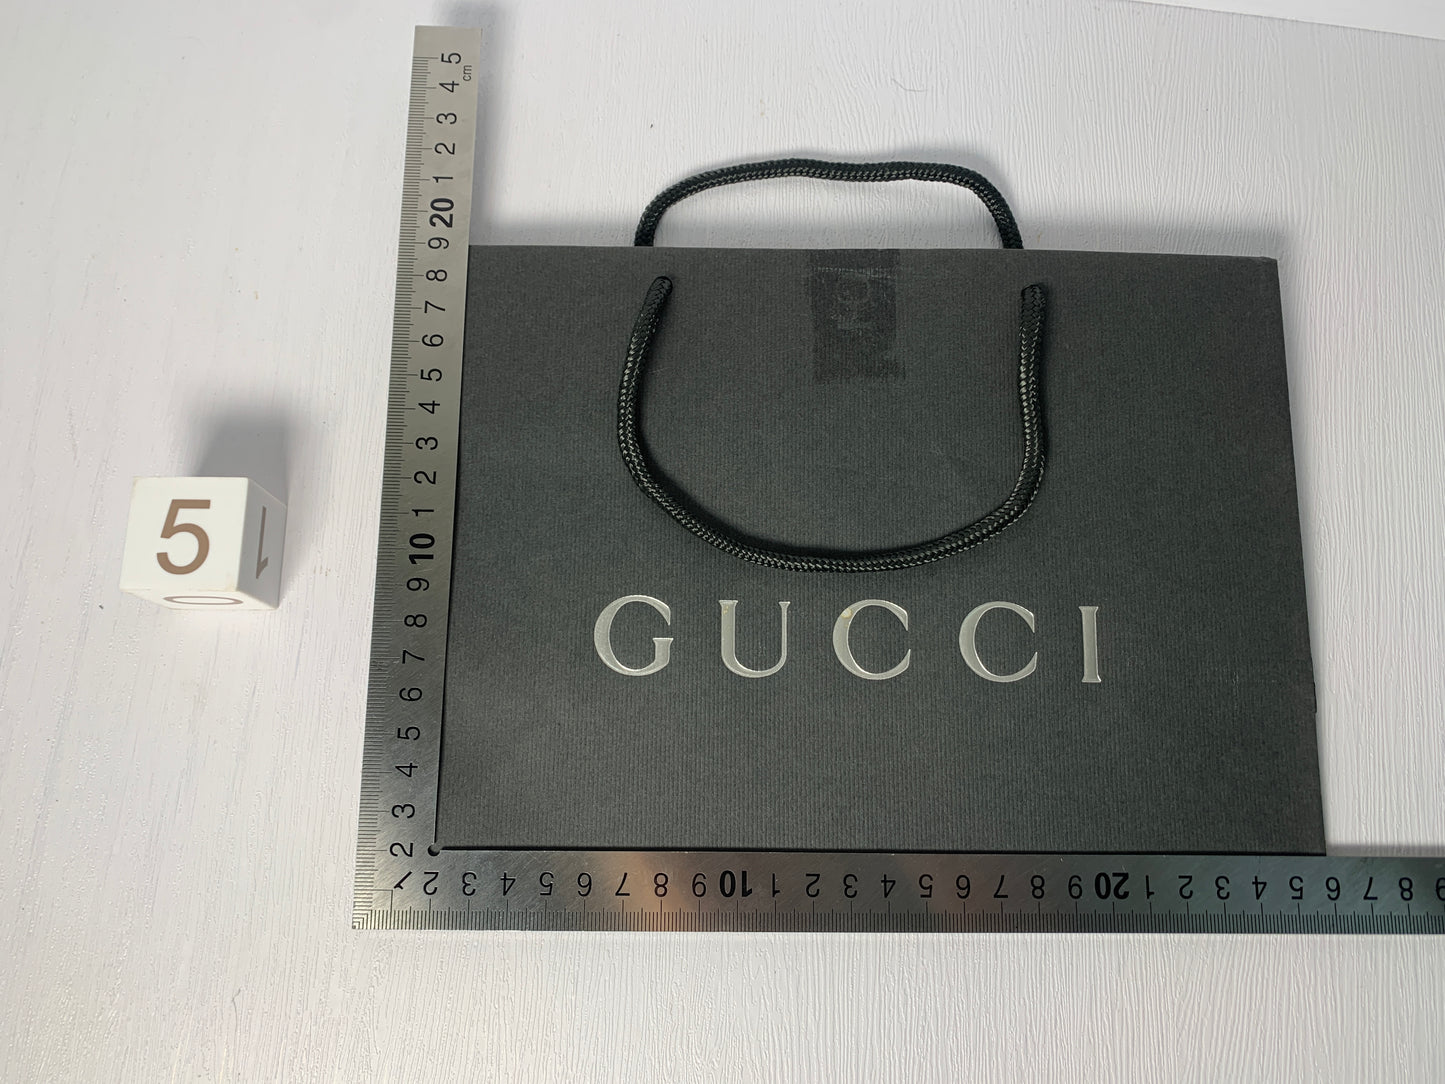 Gucci 禮品紙袋錢包手提包首飾手錶珠寶袋 - 29JAN